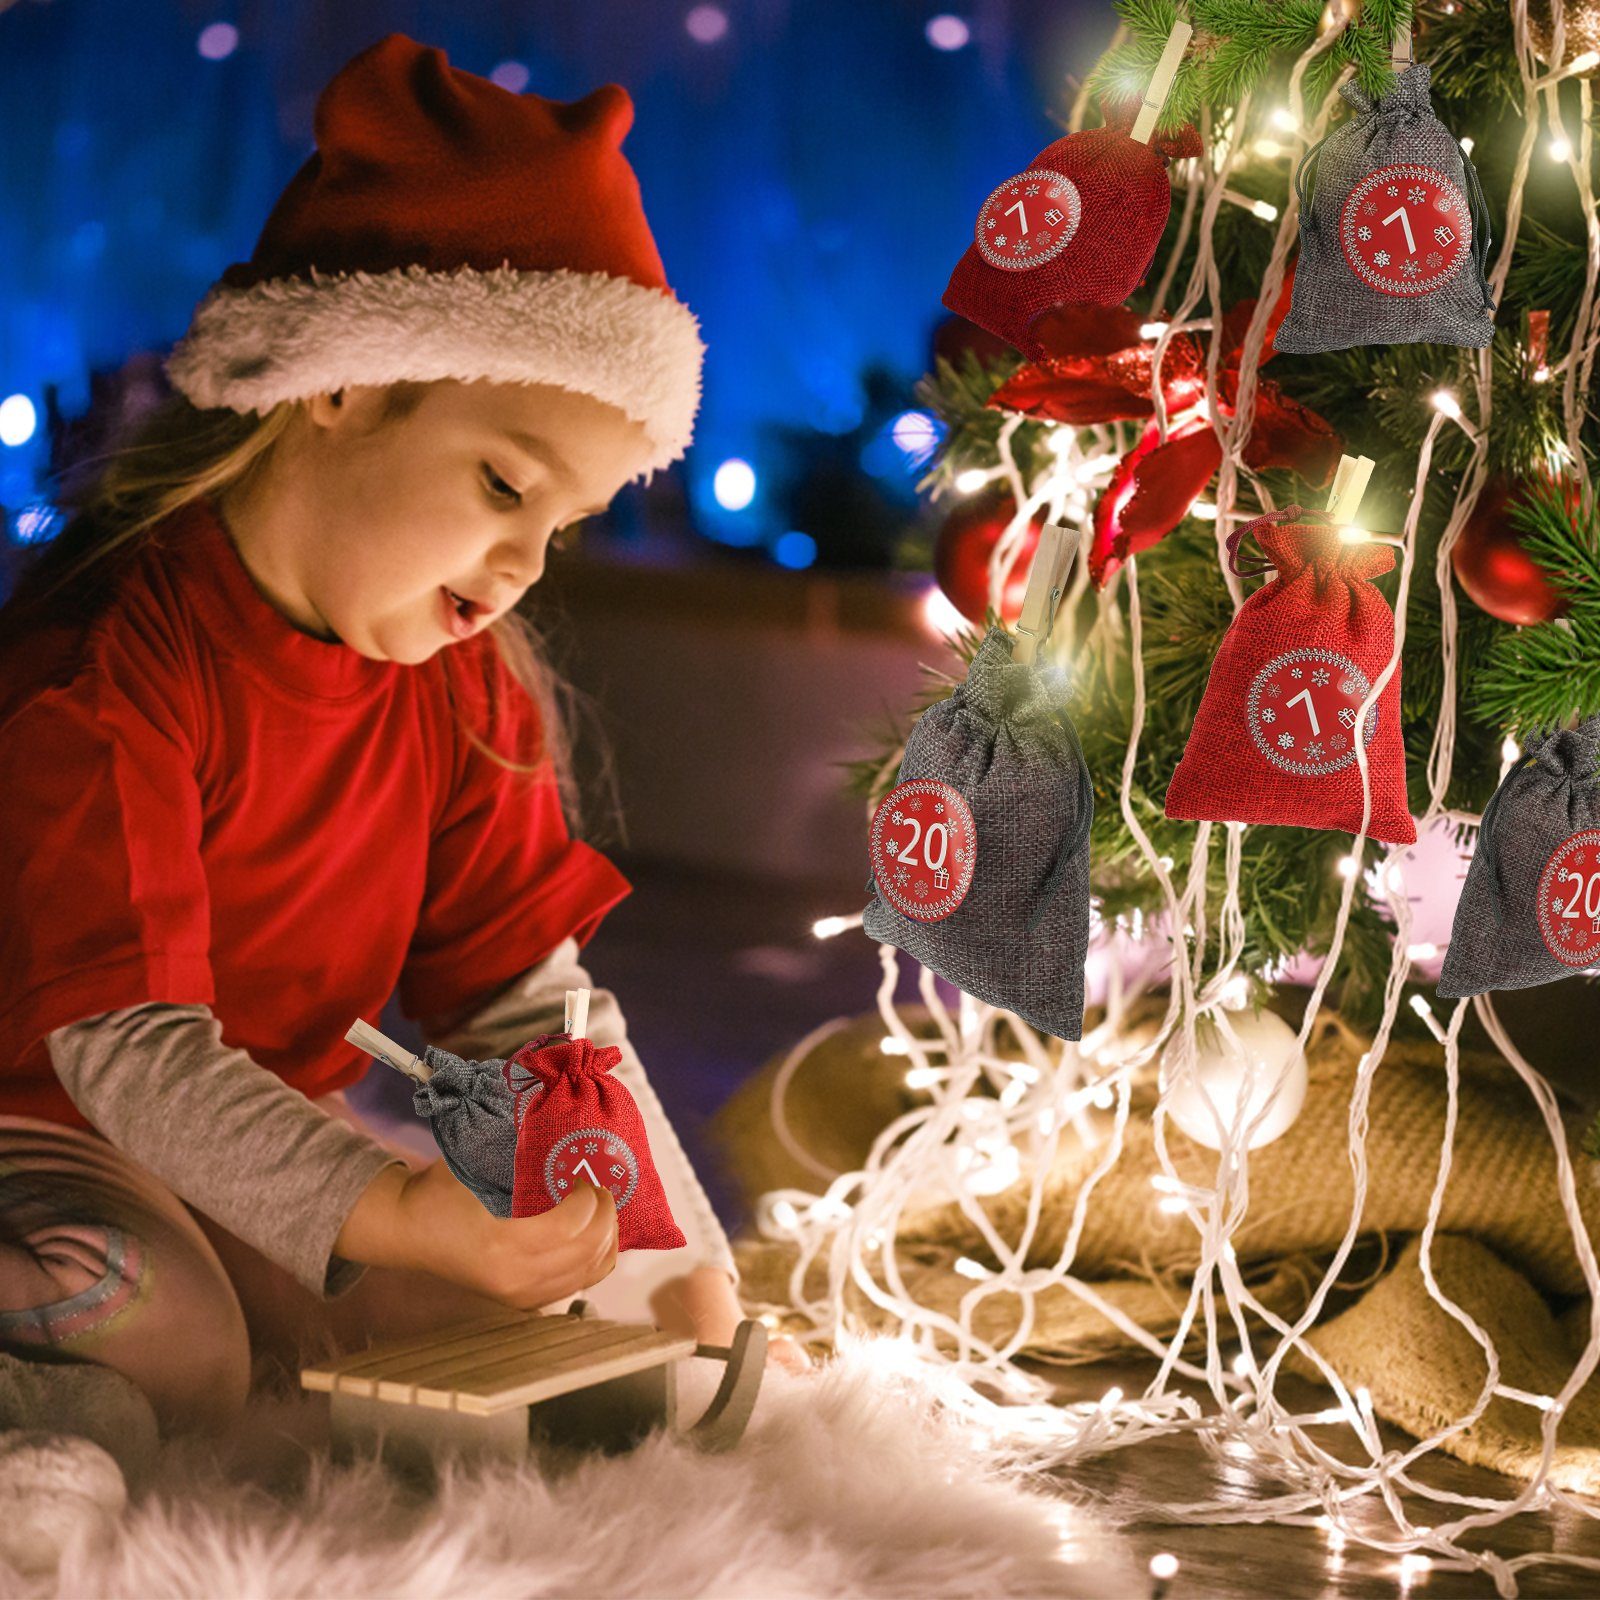 Rot/Grau Jutesäckchen -DIY Weihnachtskalender zum Dekohänger Lospitch Christbaumschmuck Befüllen